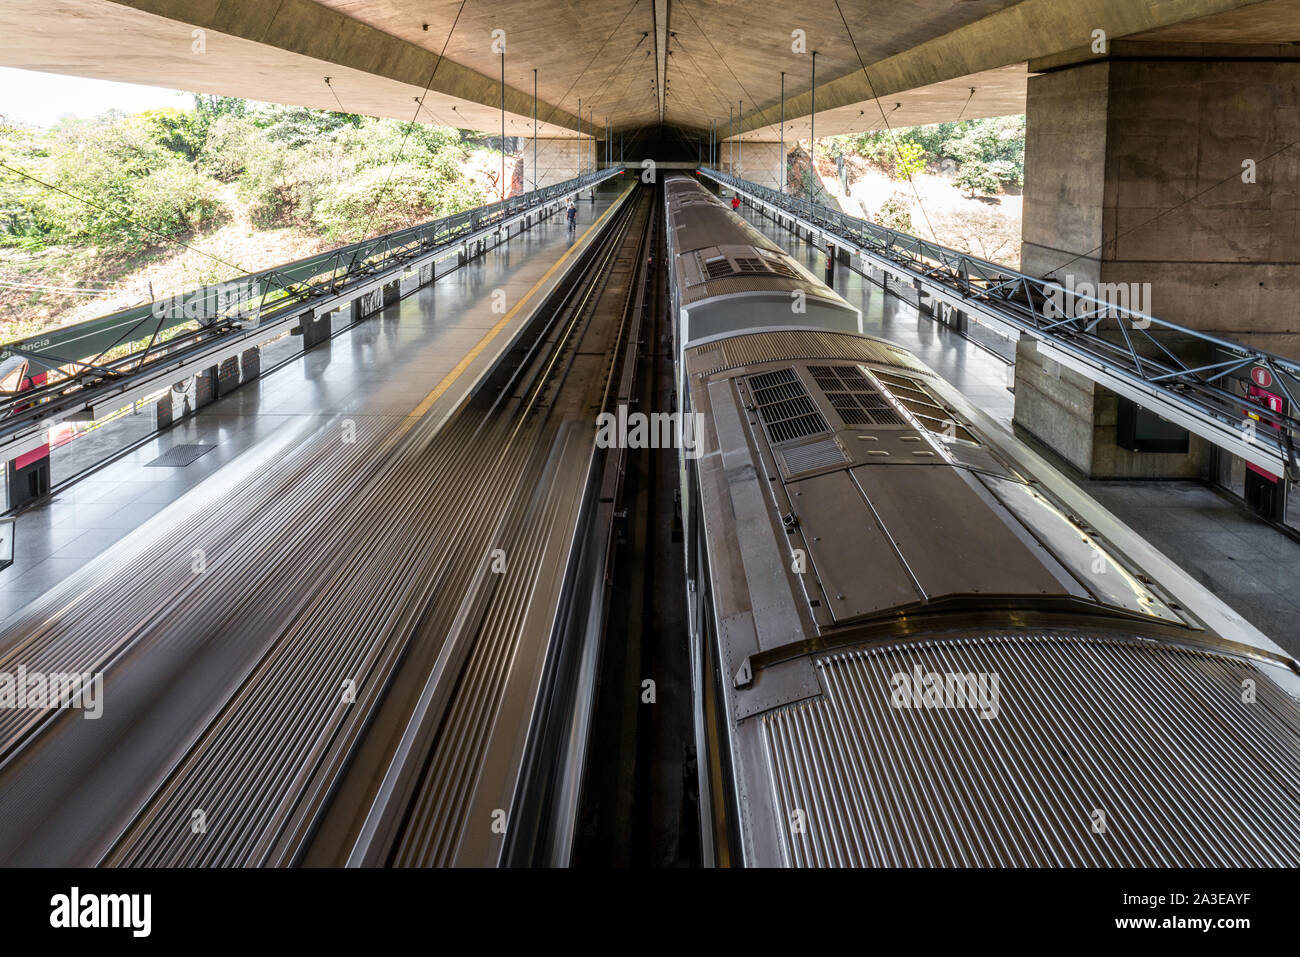 SAO PAULO, Brasile - 05, Ottobre 2019: immagine orizzontale di due treni in l'incredibile architettura Sumare Stazione della metropolitana si trova in Sao Paulo, Brasile Foto Stock